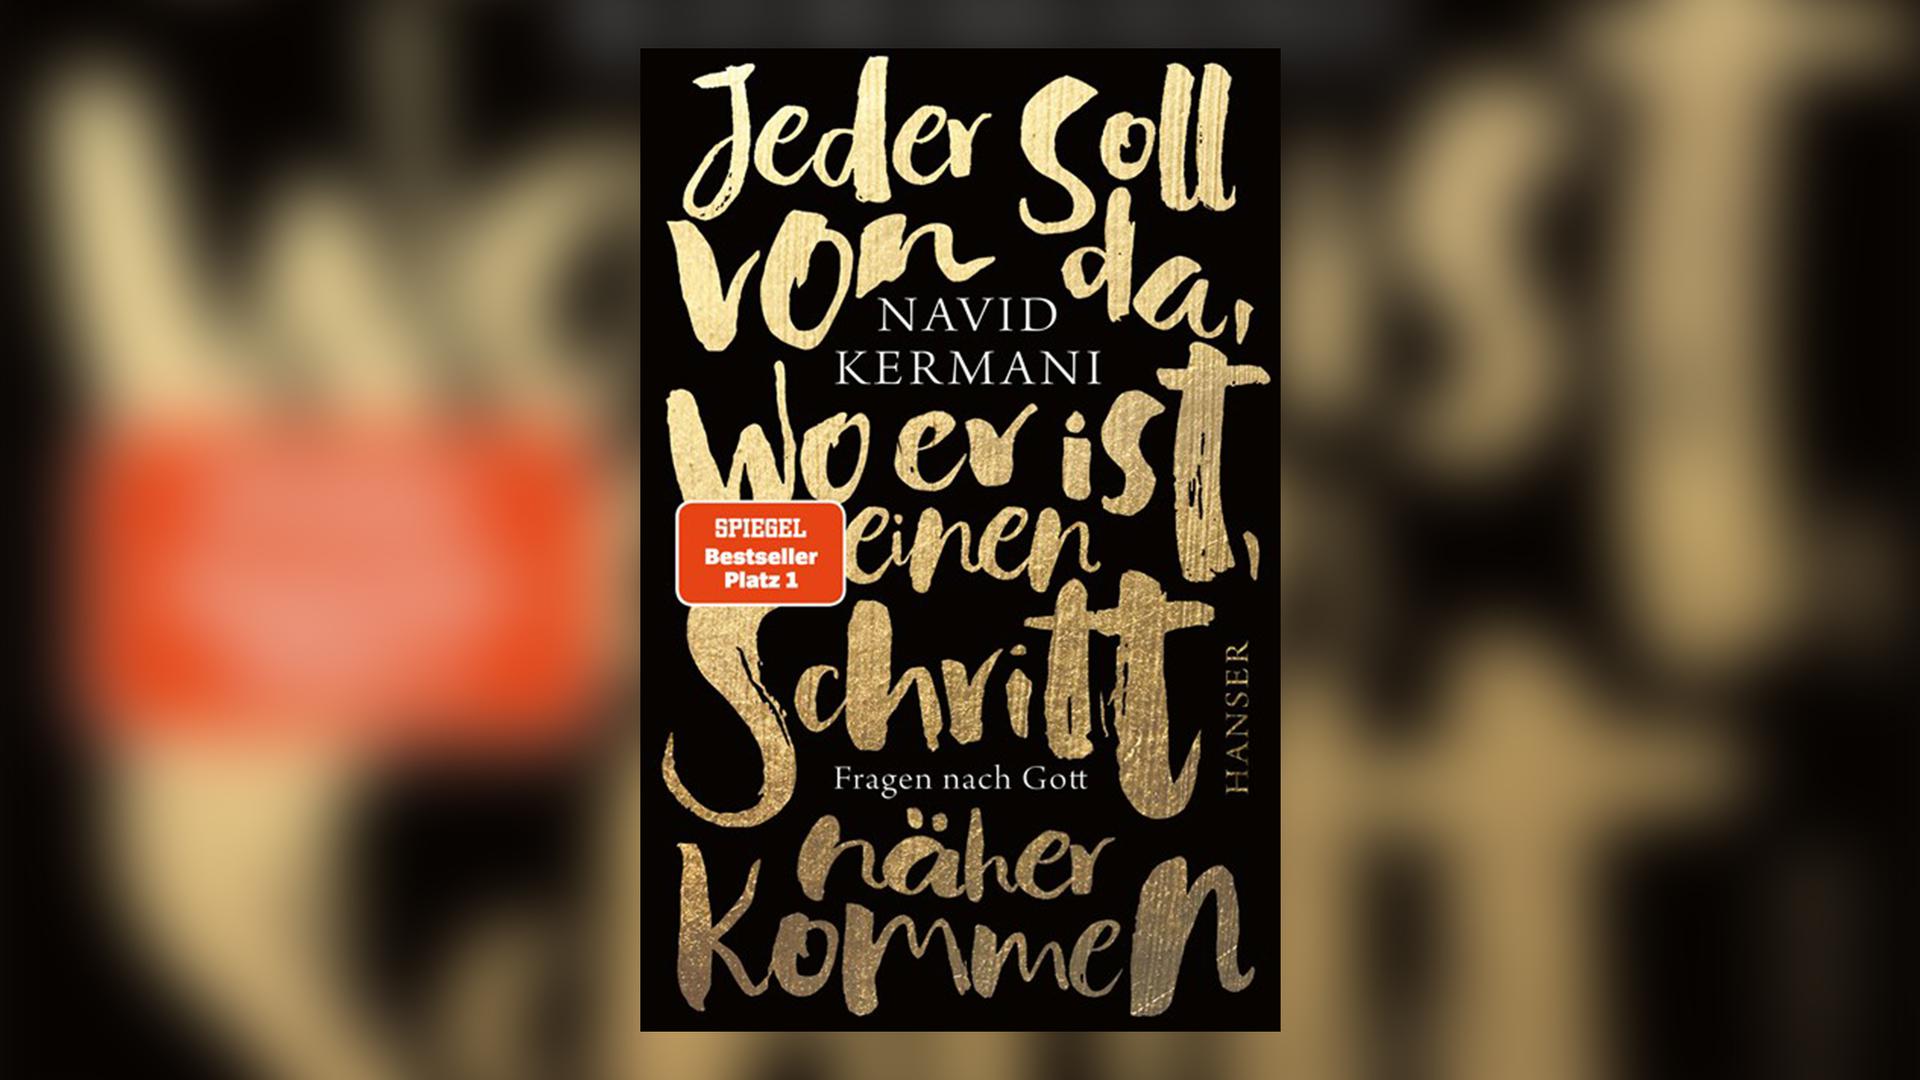 Die Empfehlung der Buchhandlung Straß in Baden-Baden: Jeder soll von da, wo er ist, einen Schritt näher kommen von Navid Kermani